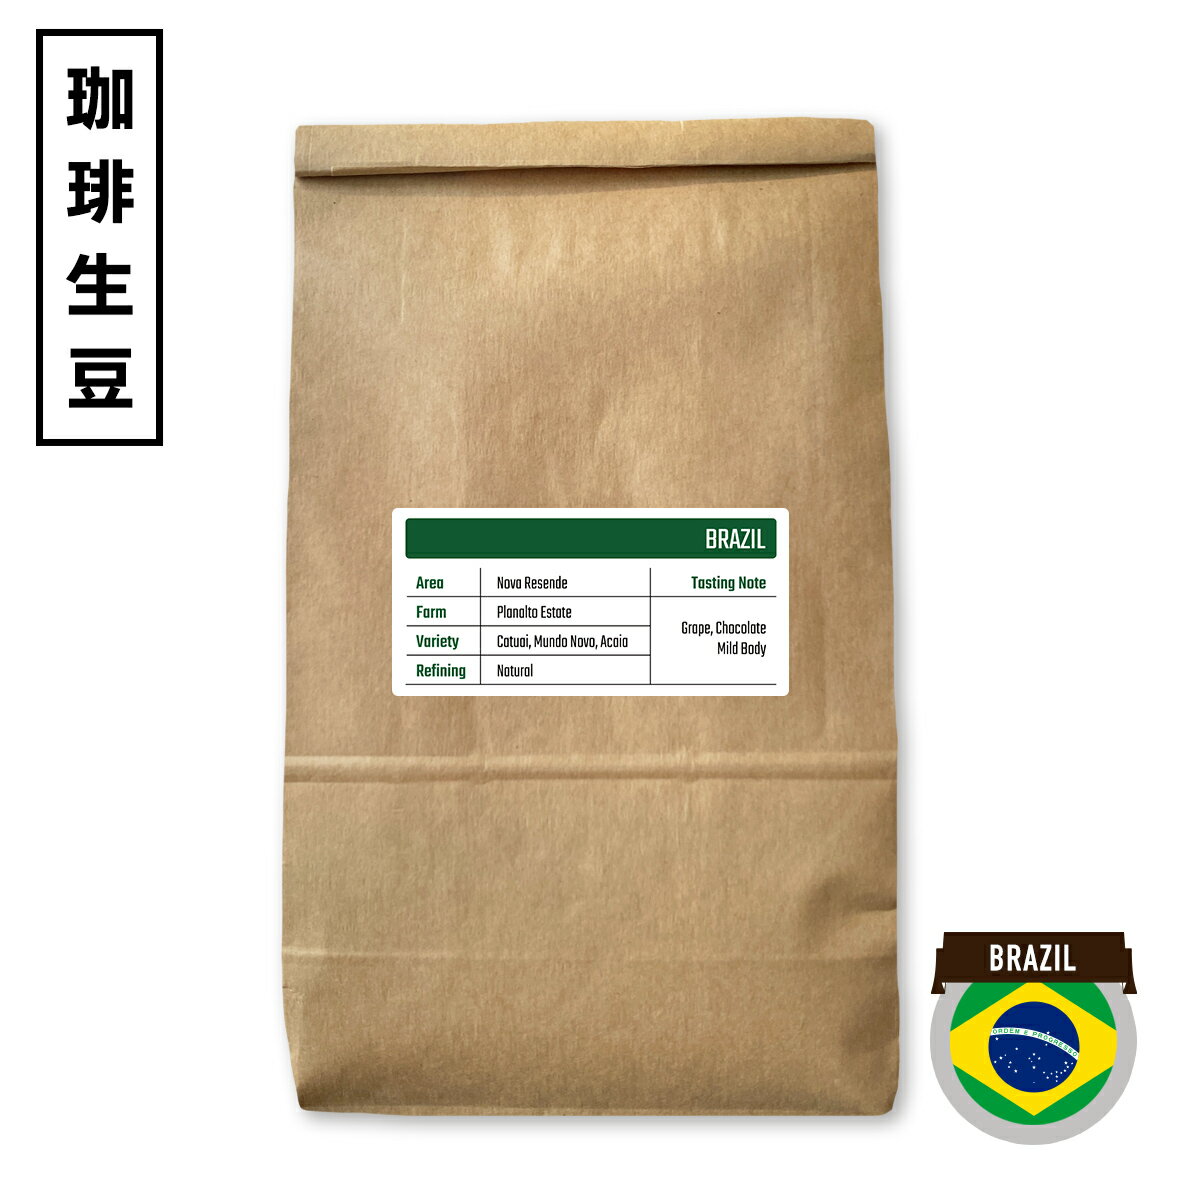 「ブラジル プラナウト農園 ナチュラル」 コーヒー生豆